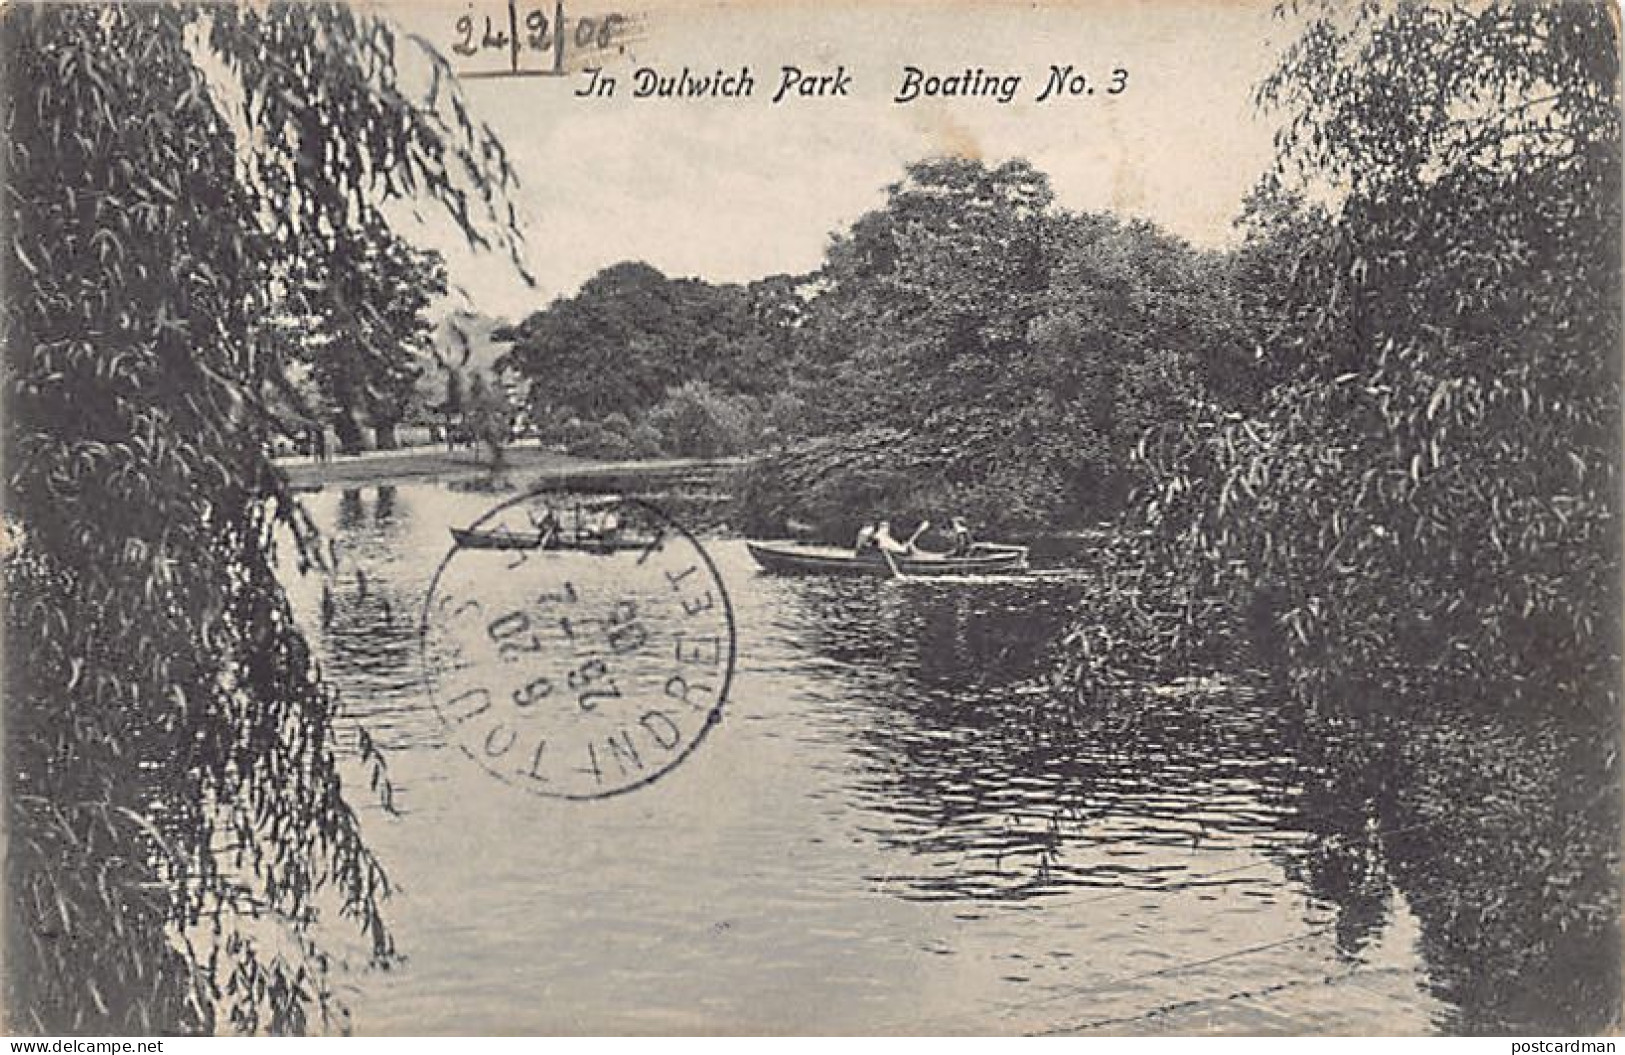 England - DULWICH London - In Dulwich Park - Boating No. 3 - Londen - Buitenwijken